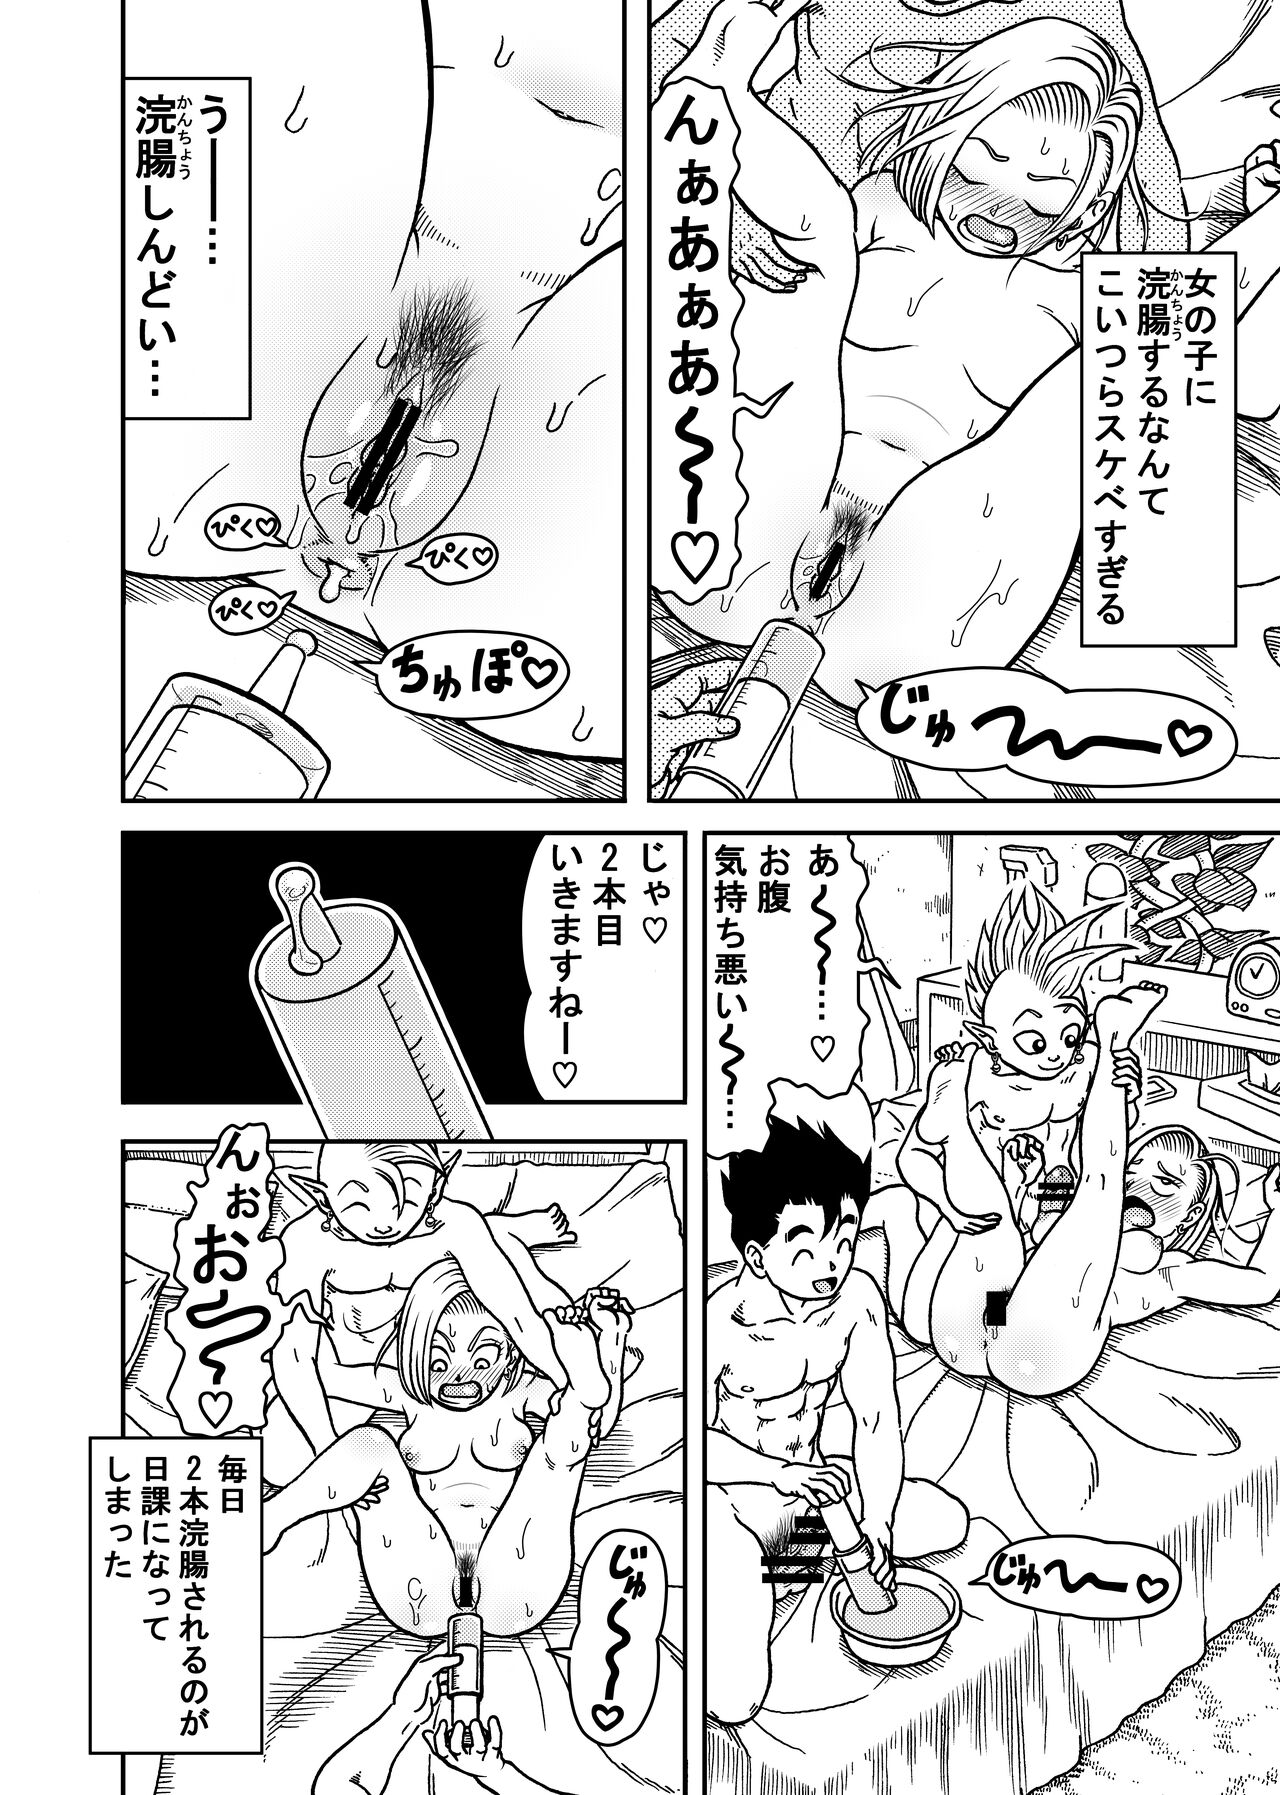 18 Gou NTR Nakadashi On Parade 6 Page 6 IMHentai